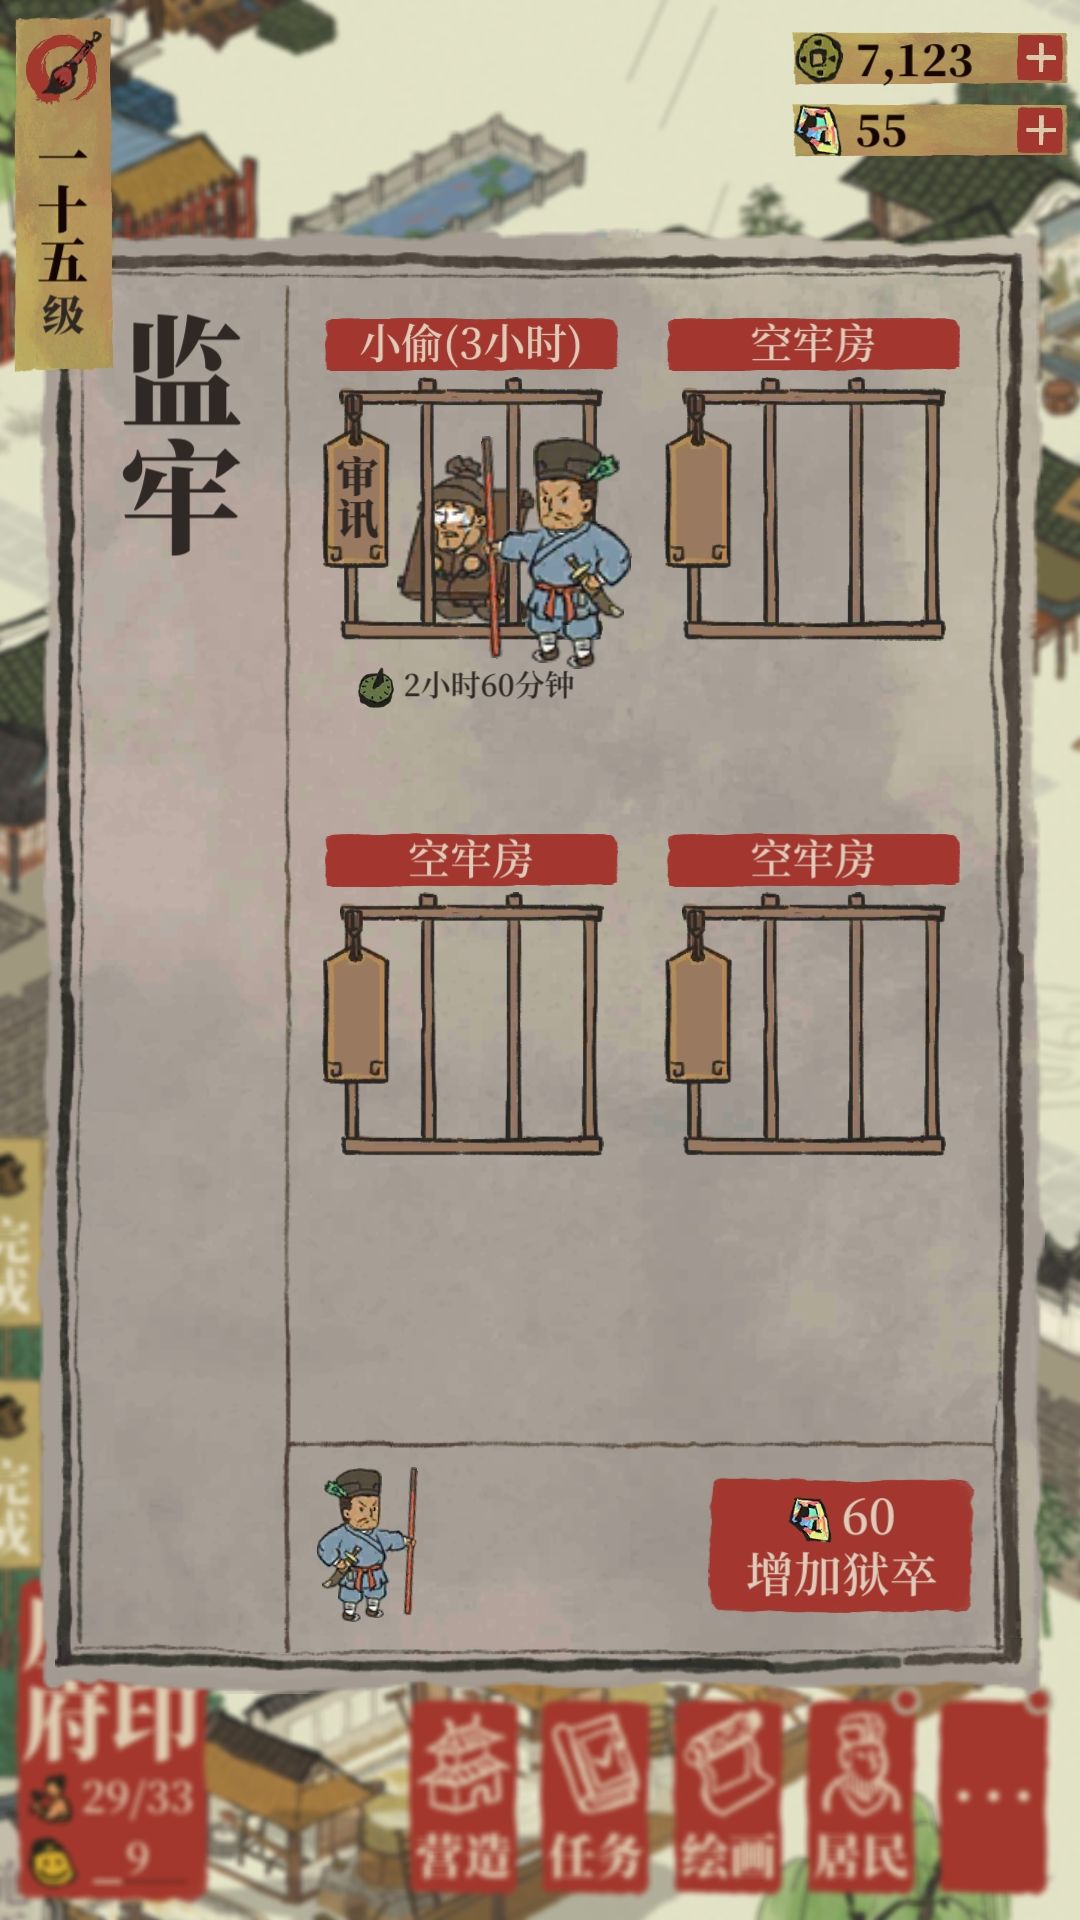 《江南百景图》监牢的用法